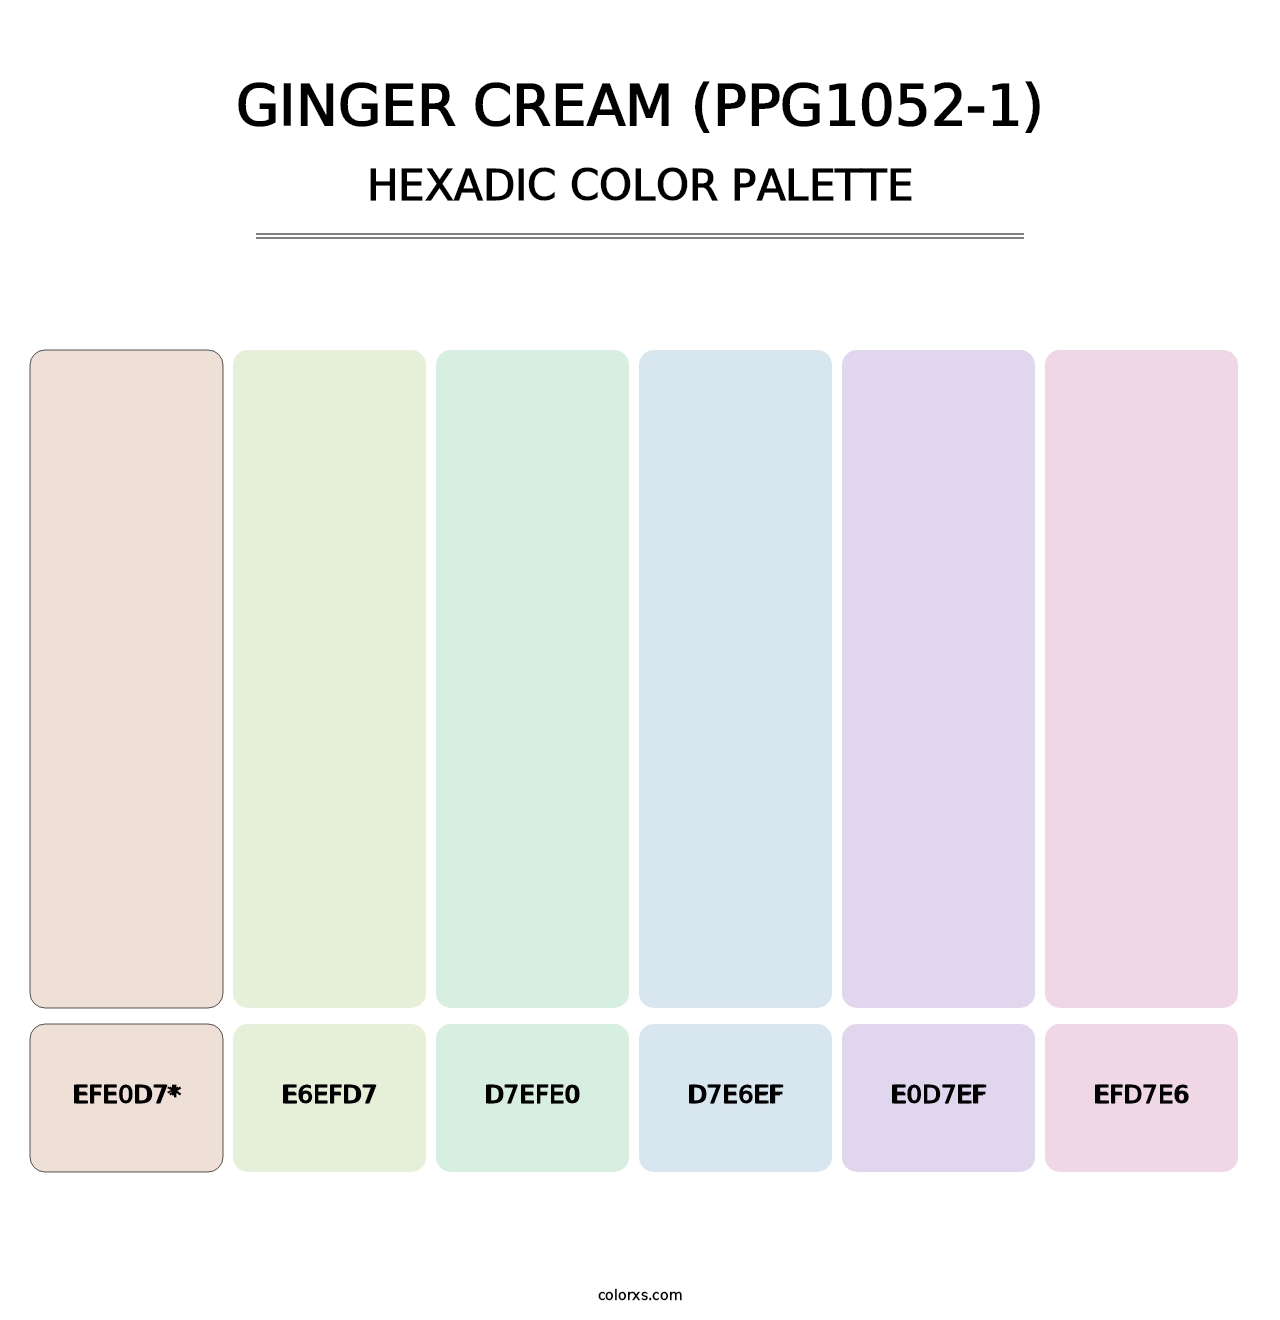 Ginger Cream (PPG1052-1) - Hexadic Color Palette